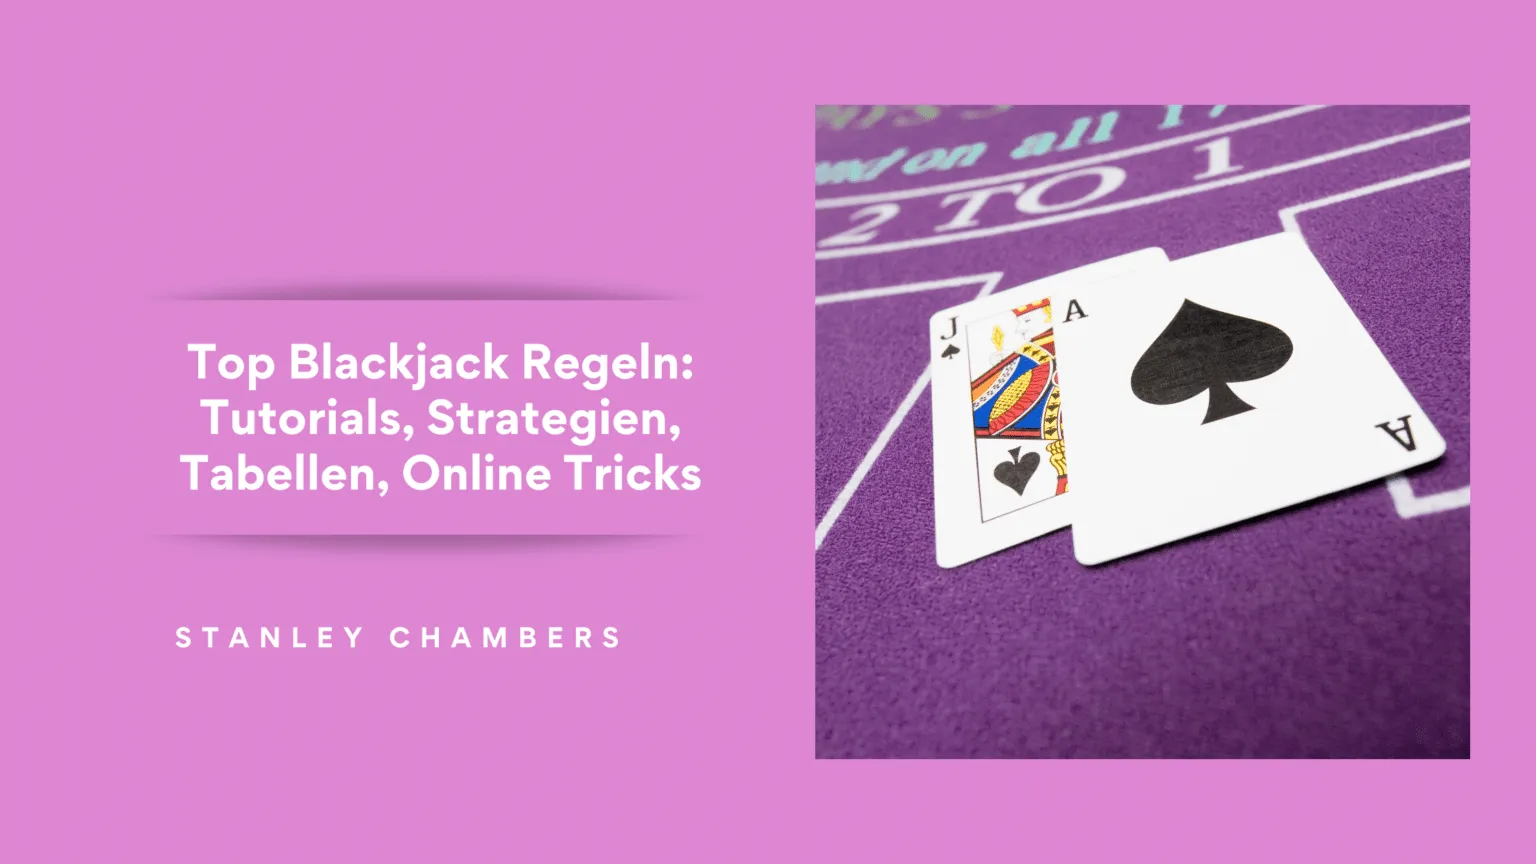 Top blackjack regeln